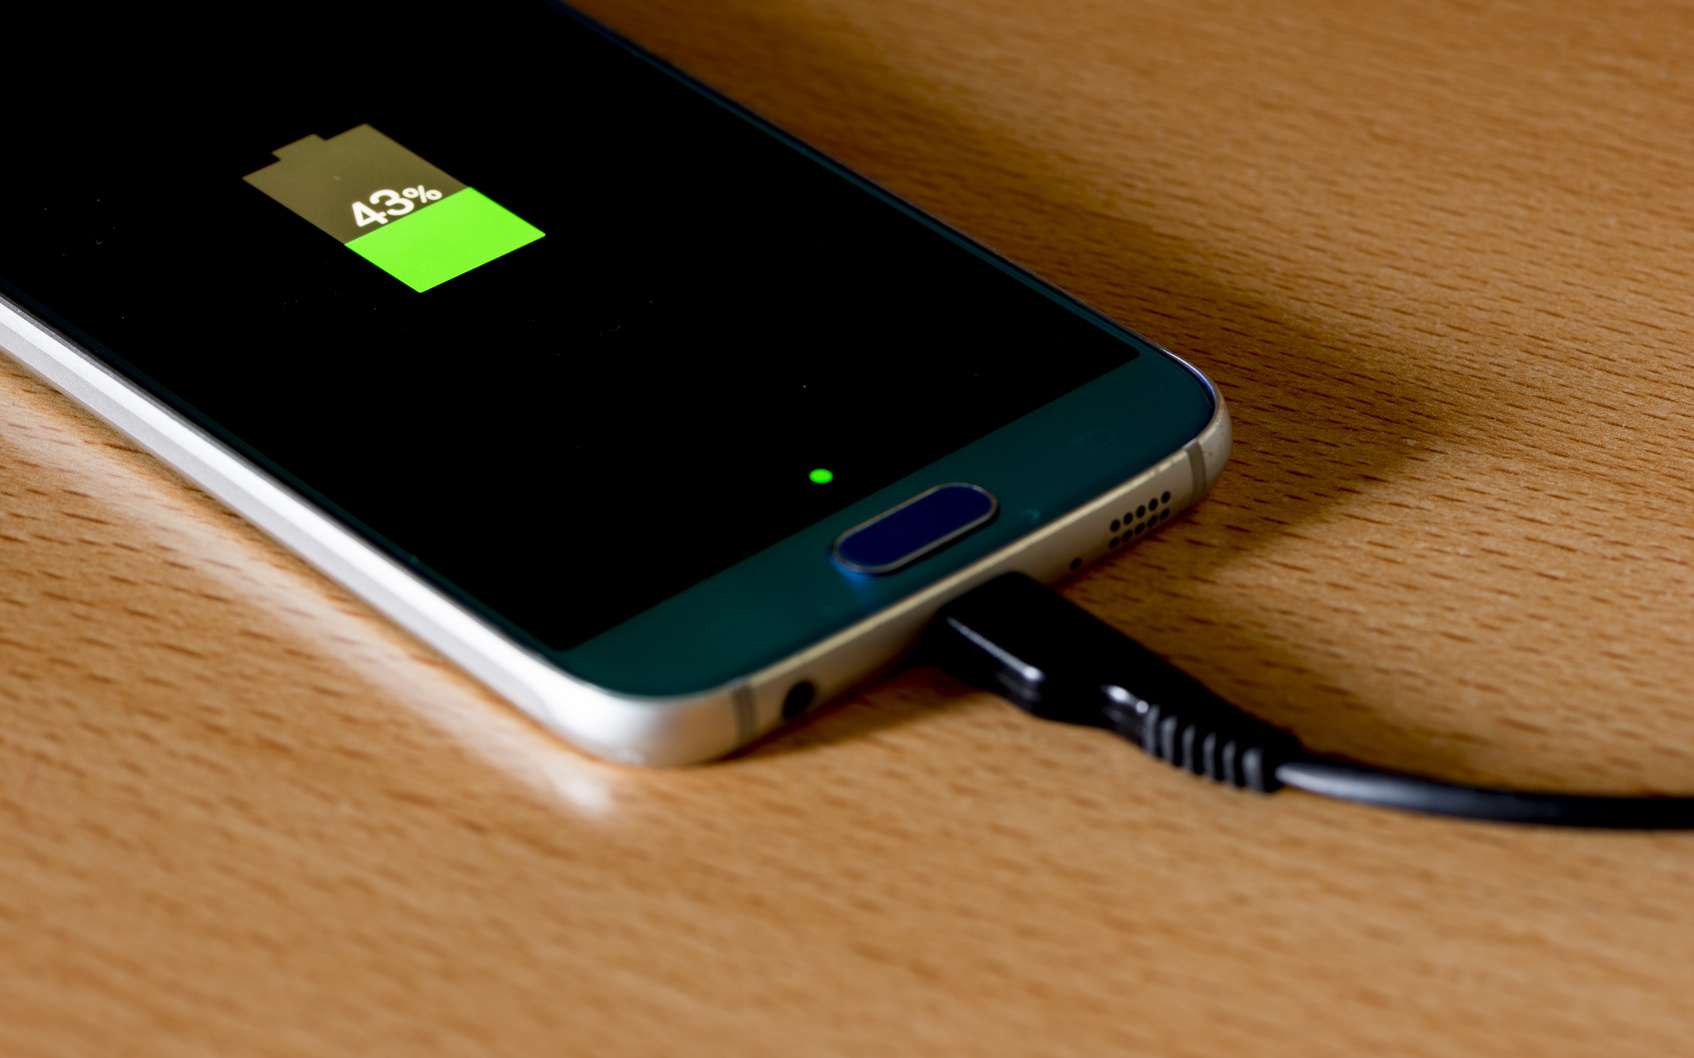 Laisser brancher son téléphone même lorsque la batterie est pleine diminue son temps de vie. © vicenfoto, Fotolia